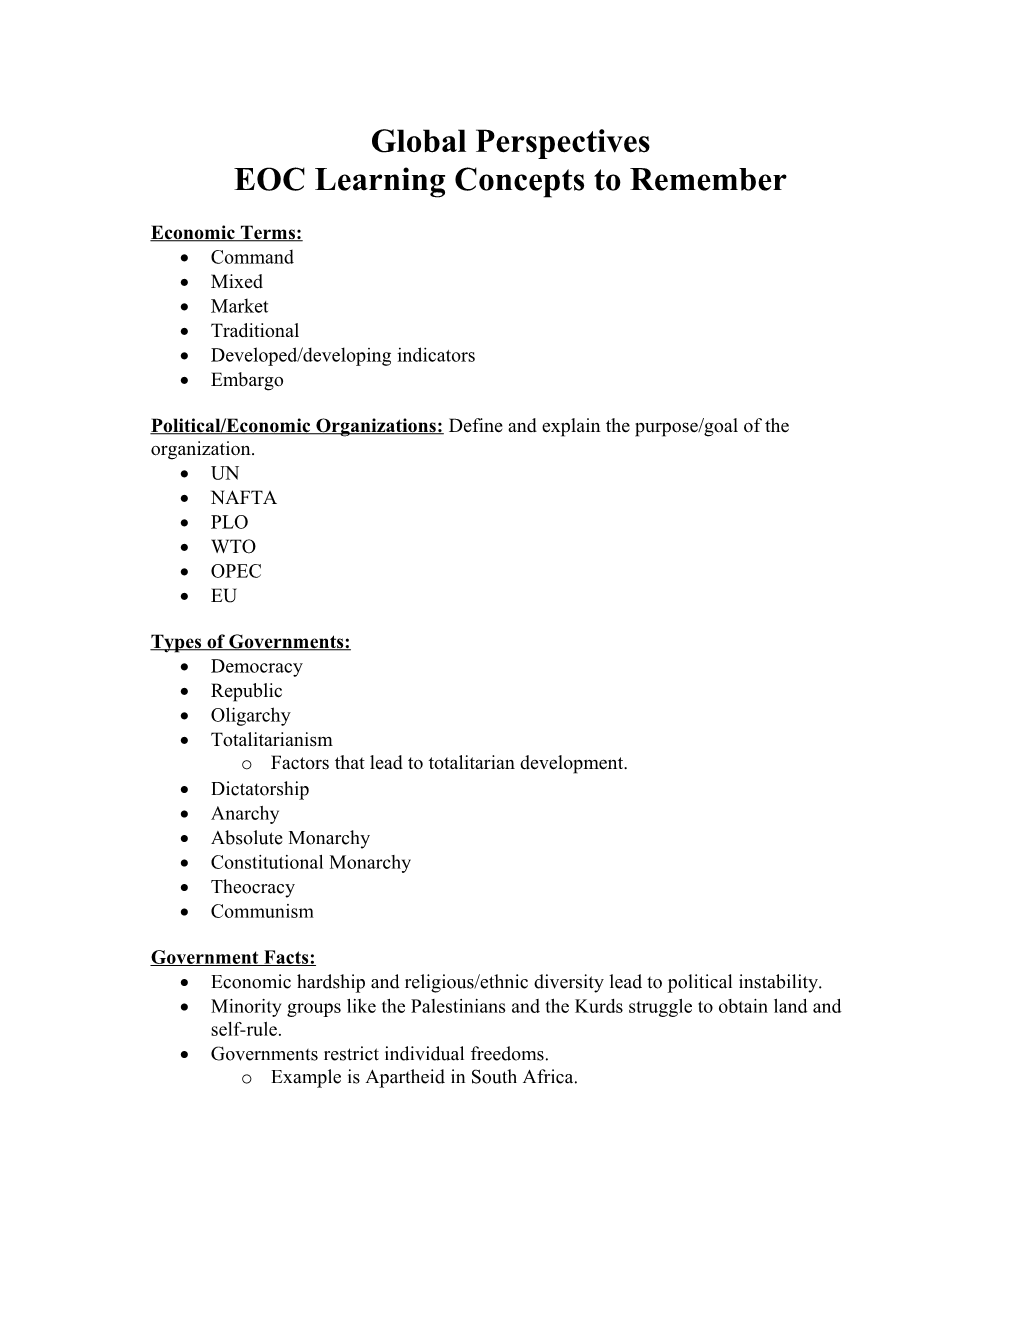 EOC Study Guide